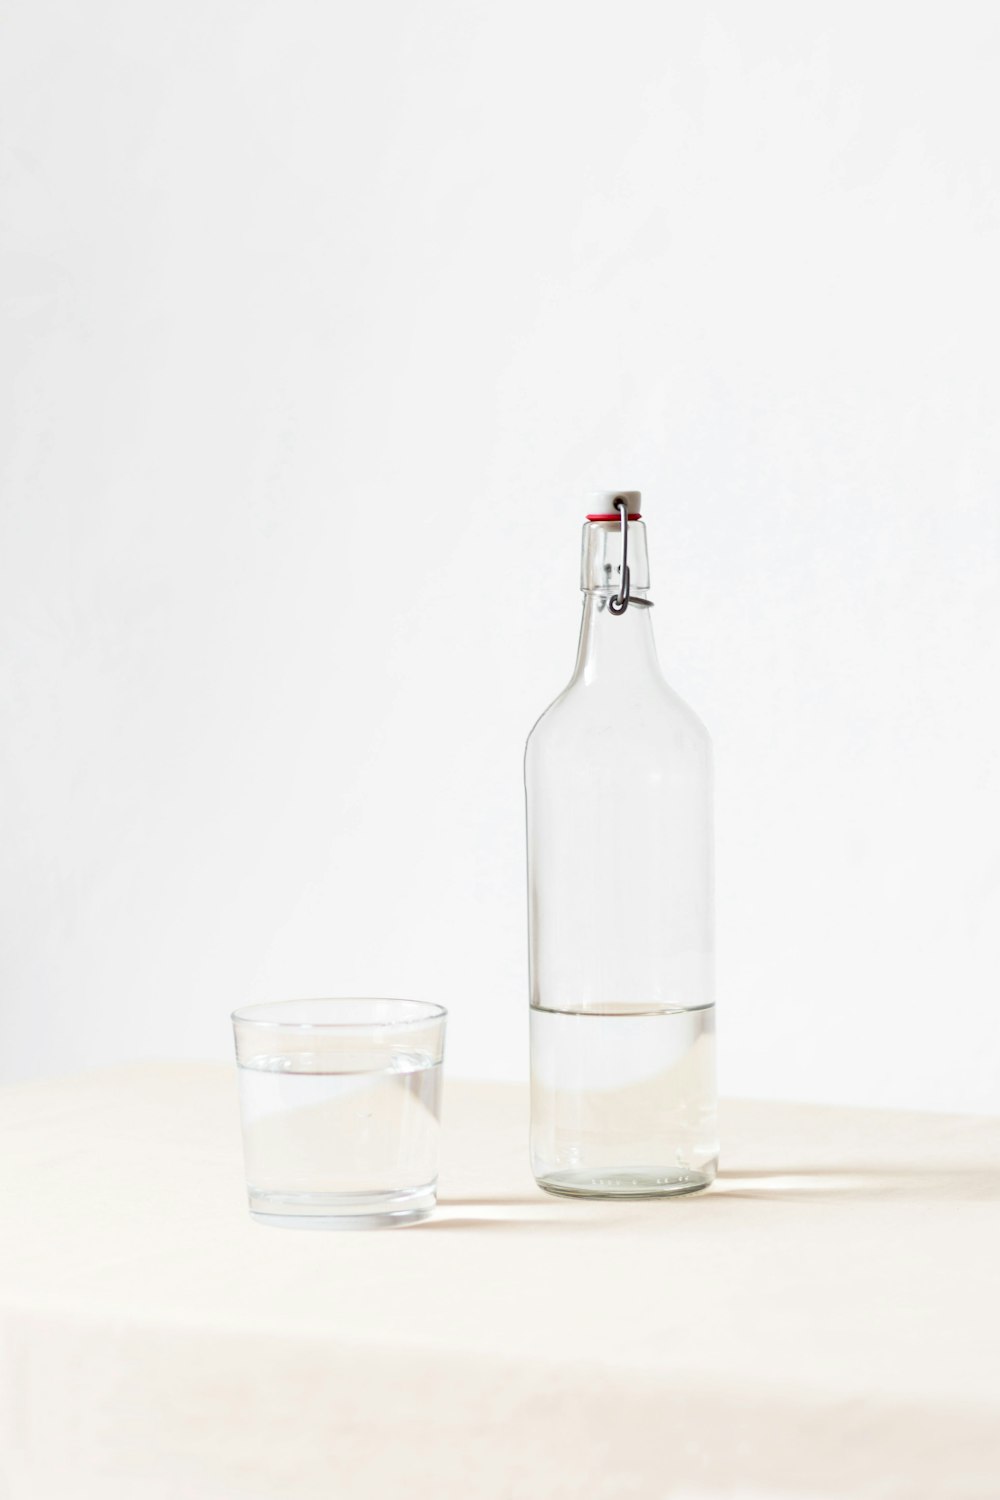 rocks glass beside half empty bottle on white surface